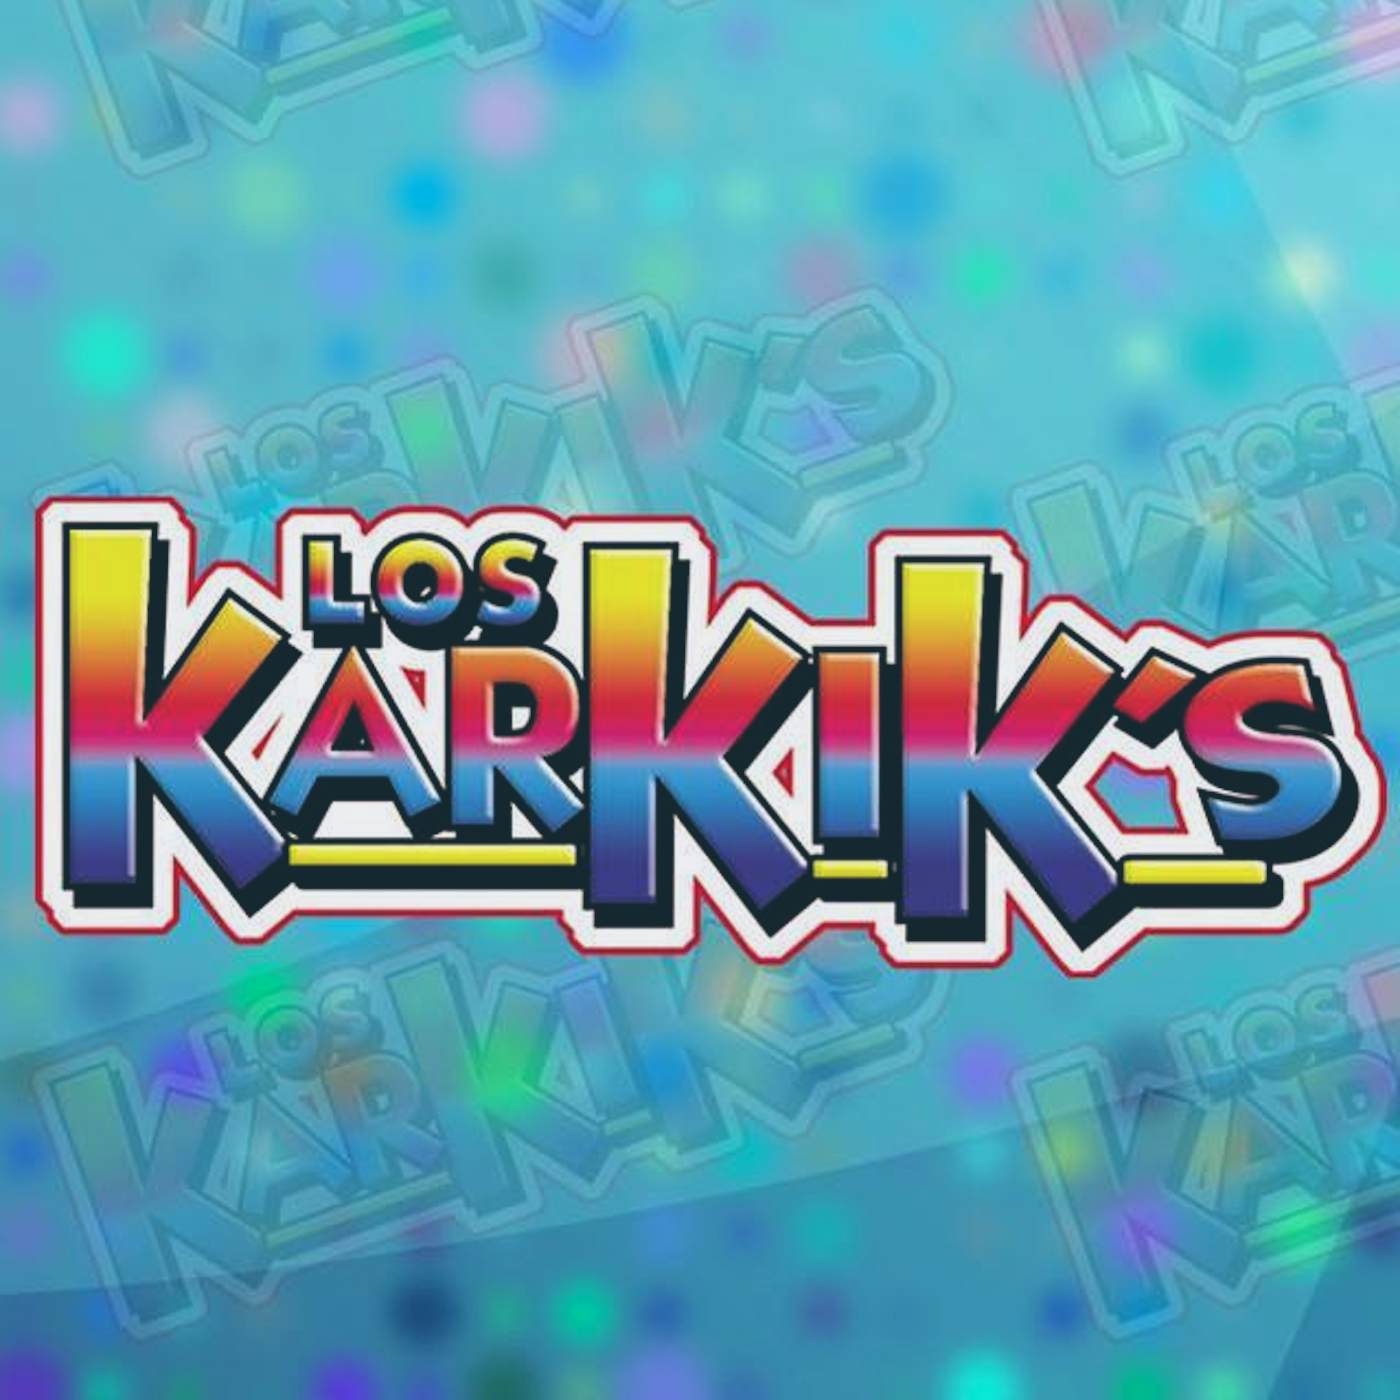 Los Karkik's